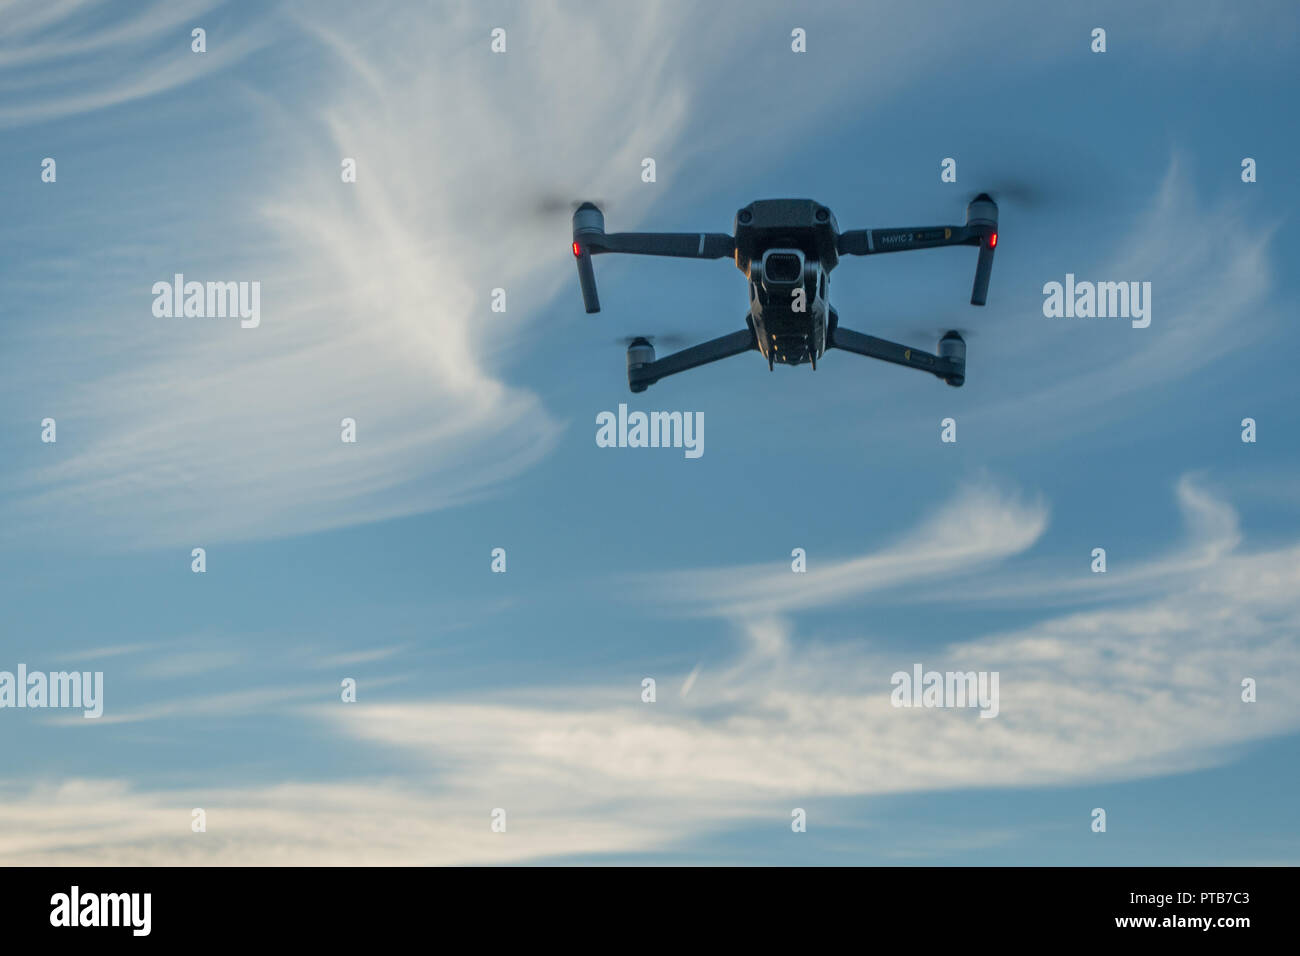 Mavic 2 Pro Drone da DJI in volo contro un cielo blu con nuvole di vorticazione, rivolta verso la telecamera. Rotherham South Yorkshire Foto Stock